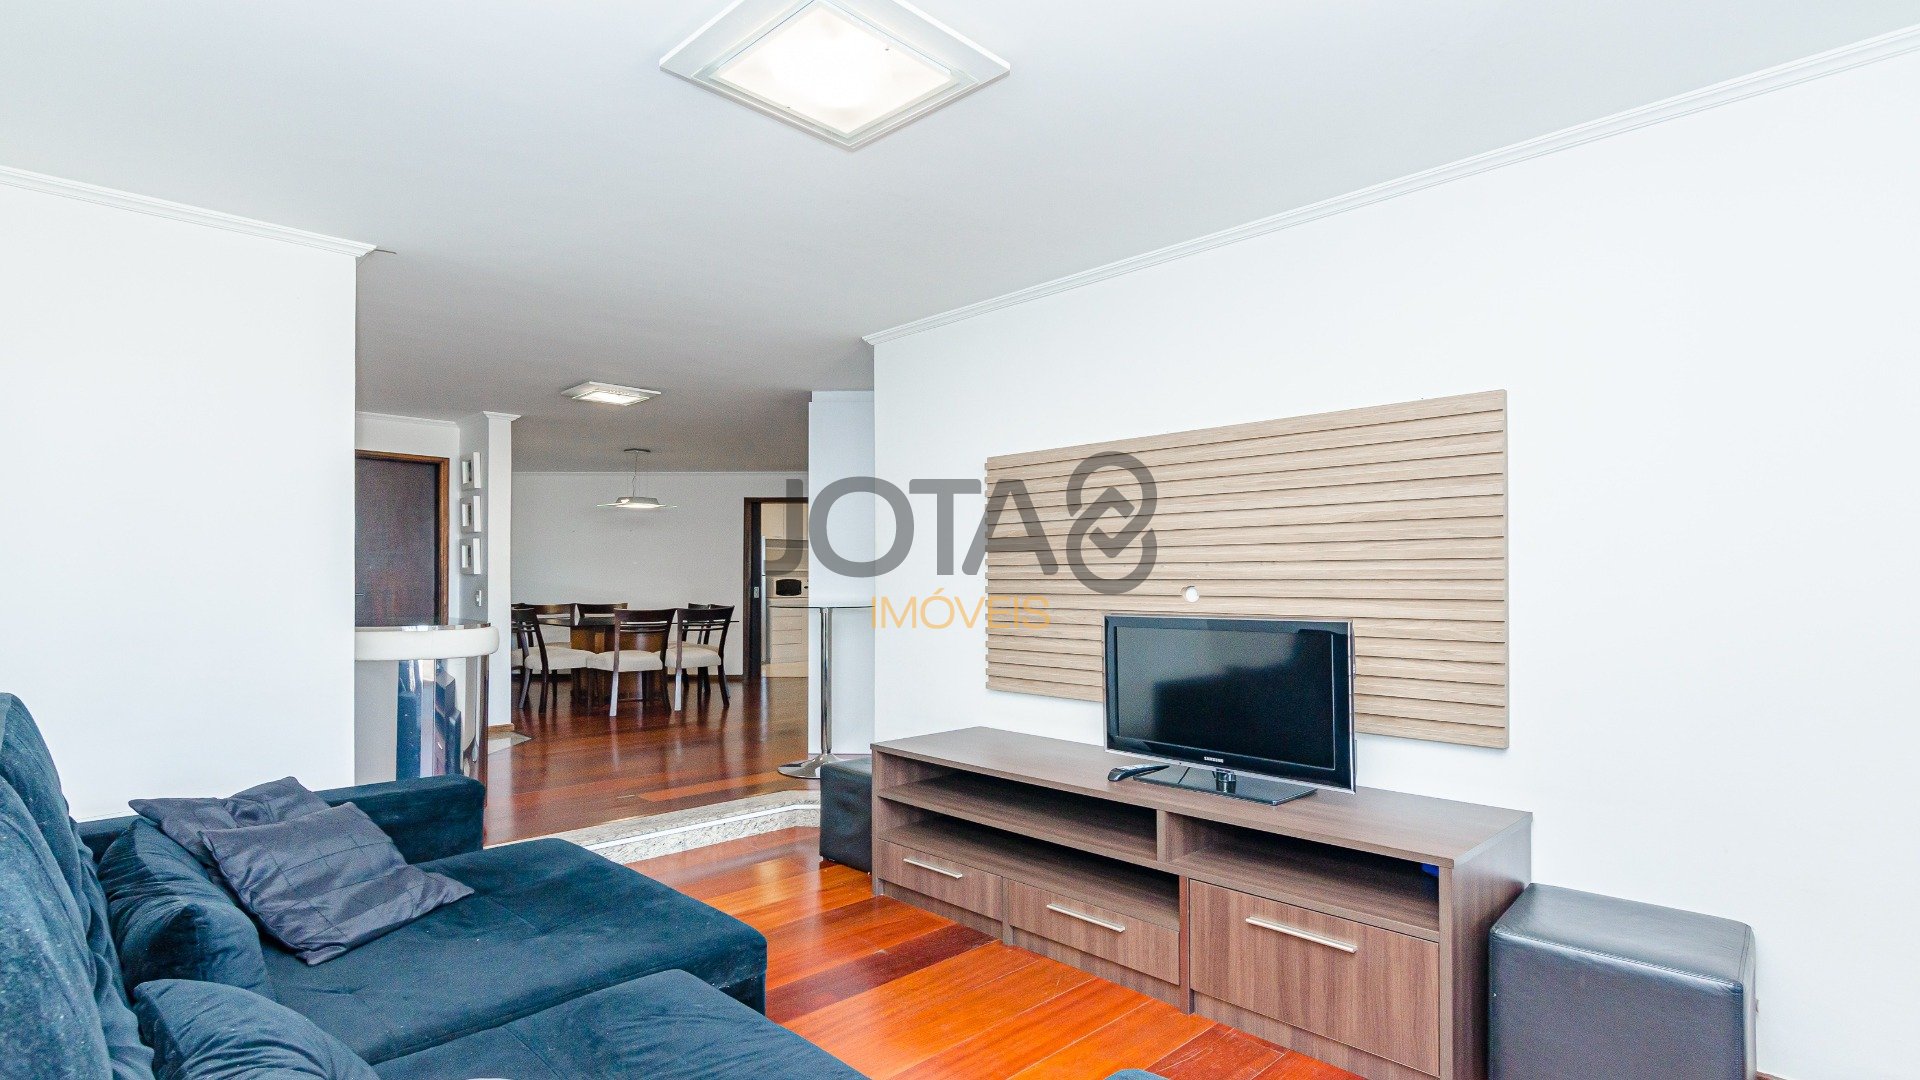 Apartamento no bairro Bigorrilho em Curitiba - Ref.: 69462 - J8 Imóveis